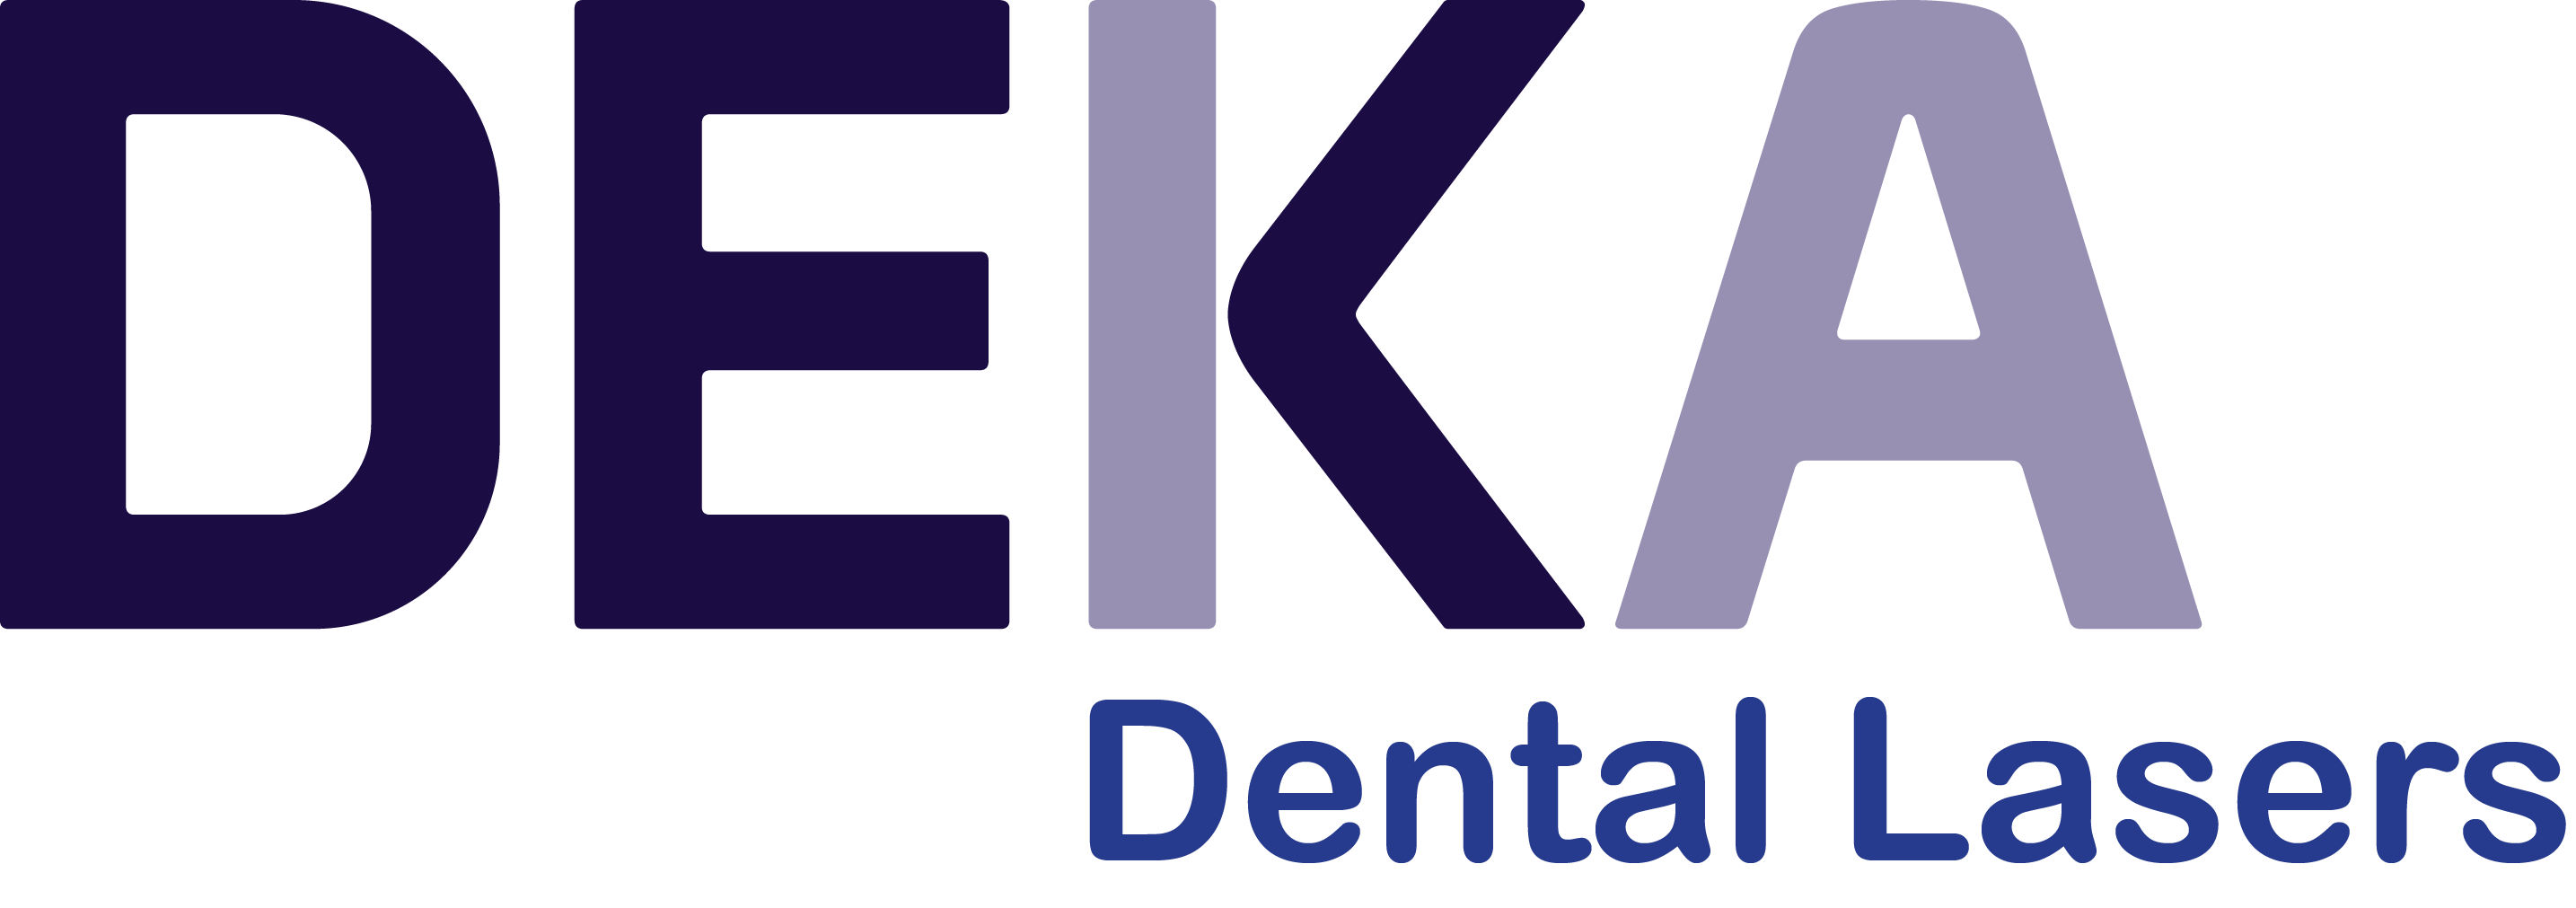 Deka Dental